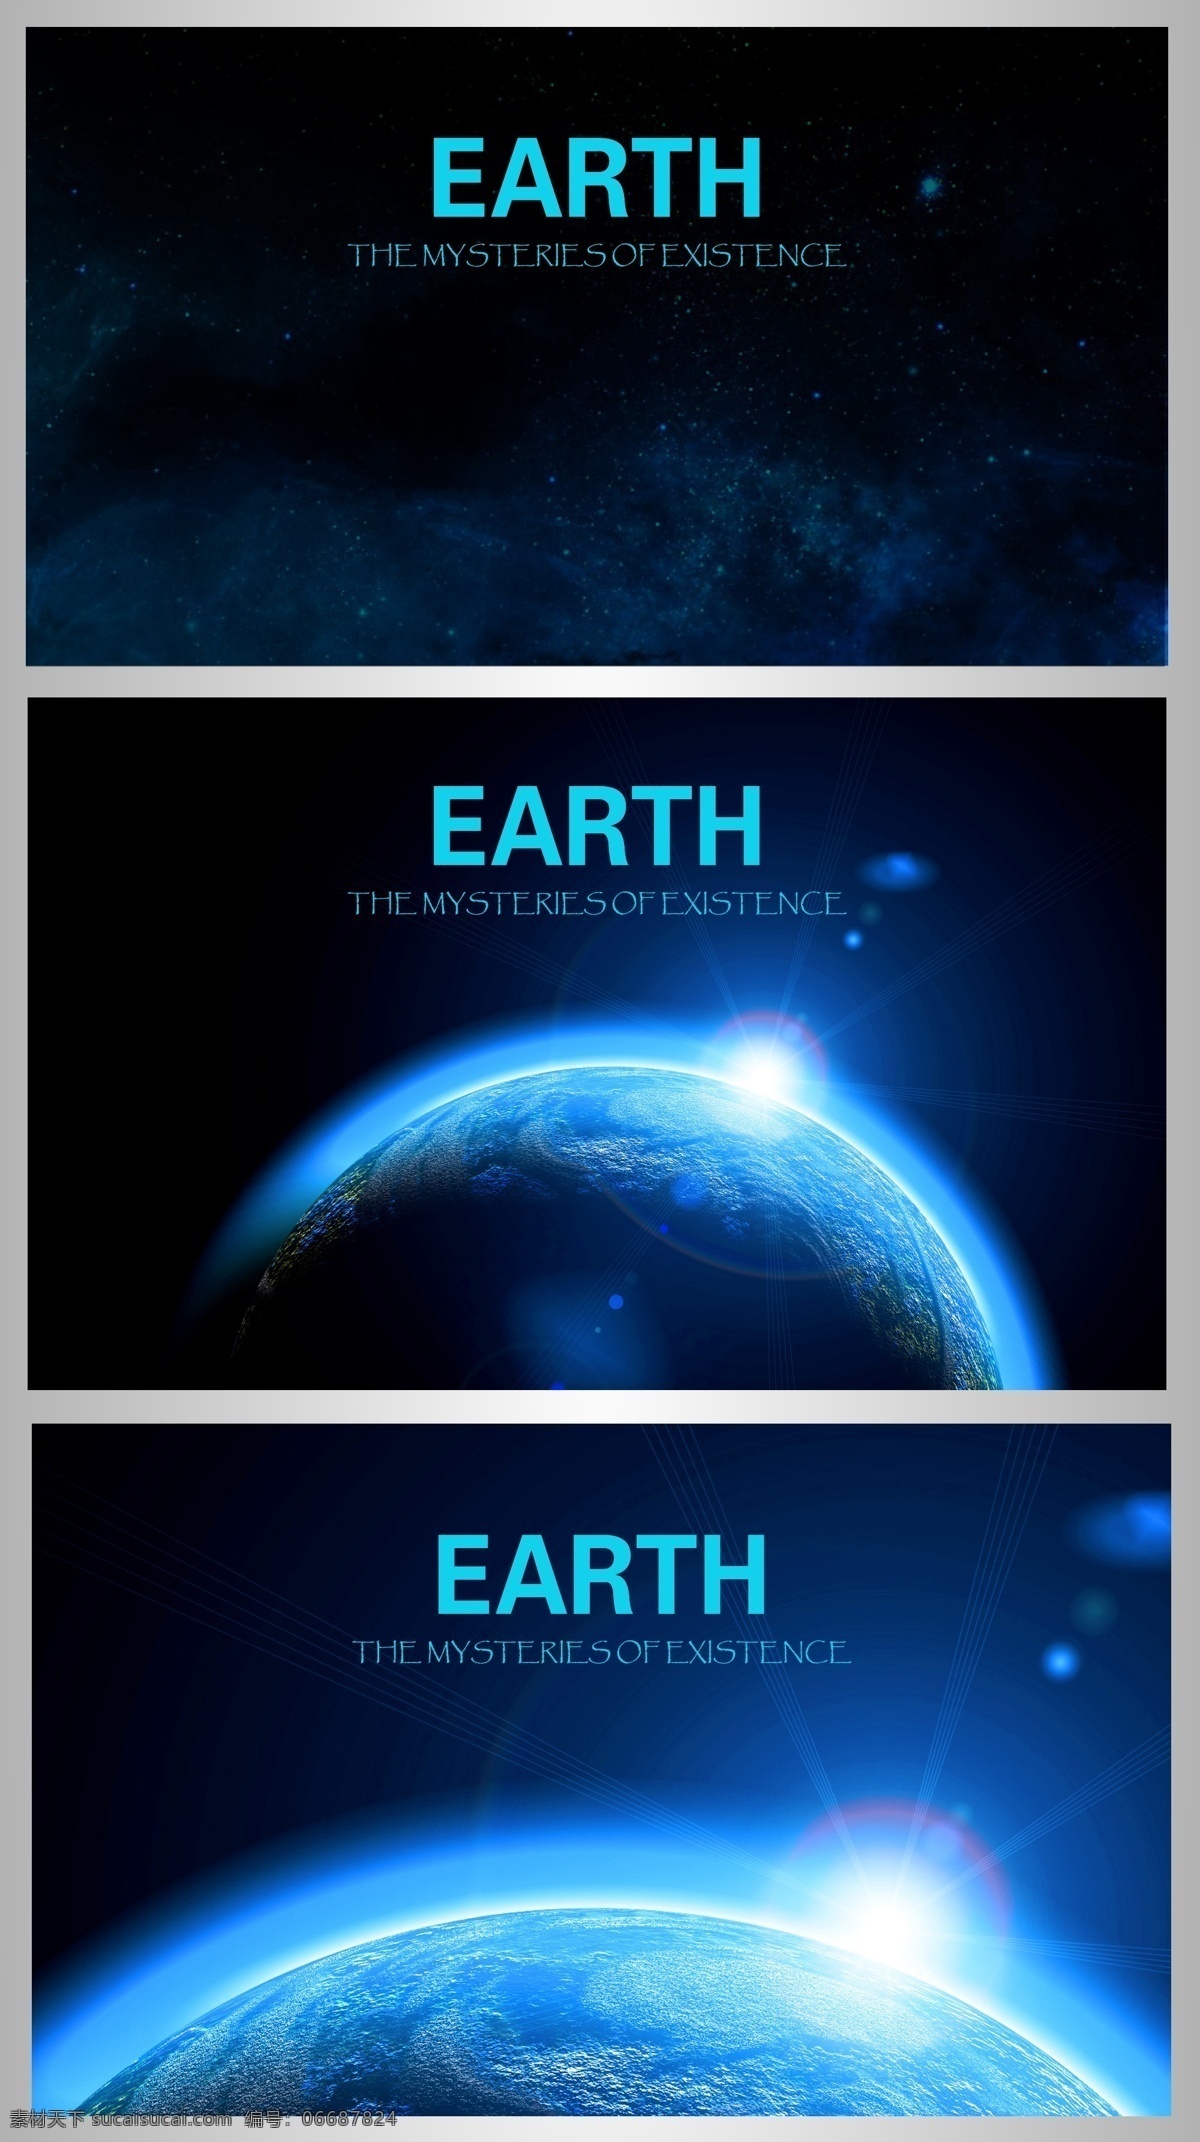 宇宙 地球 创意 卡片 海洋 创意卡片 蓝色 陆地 行星 卡片设计 矢量素材 黑色